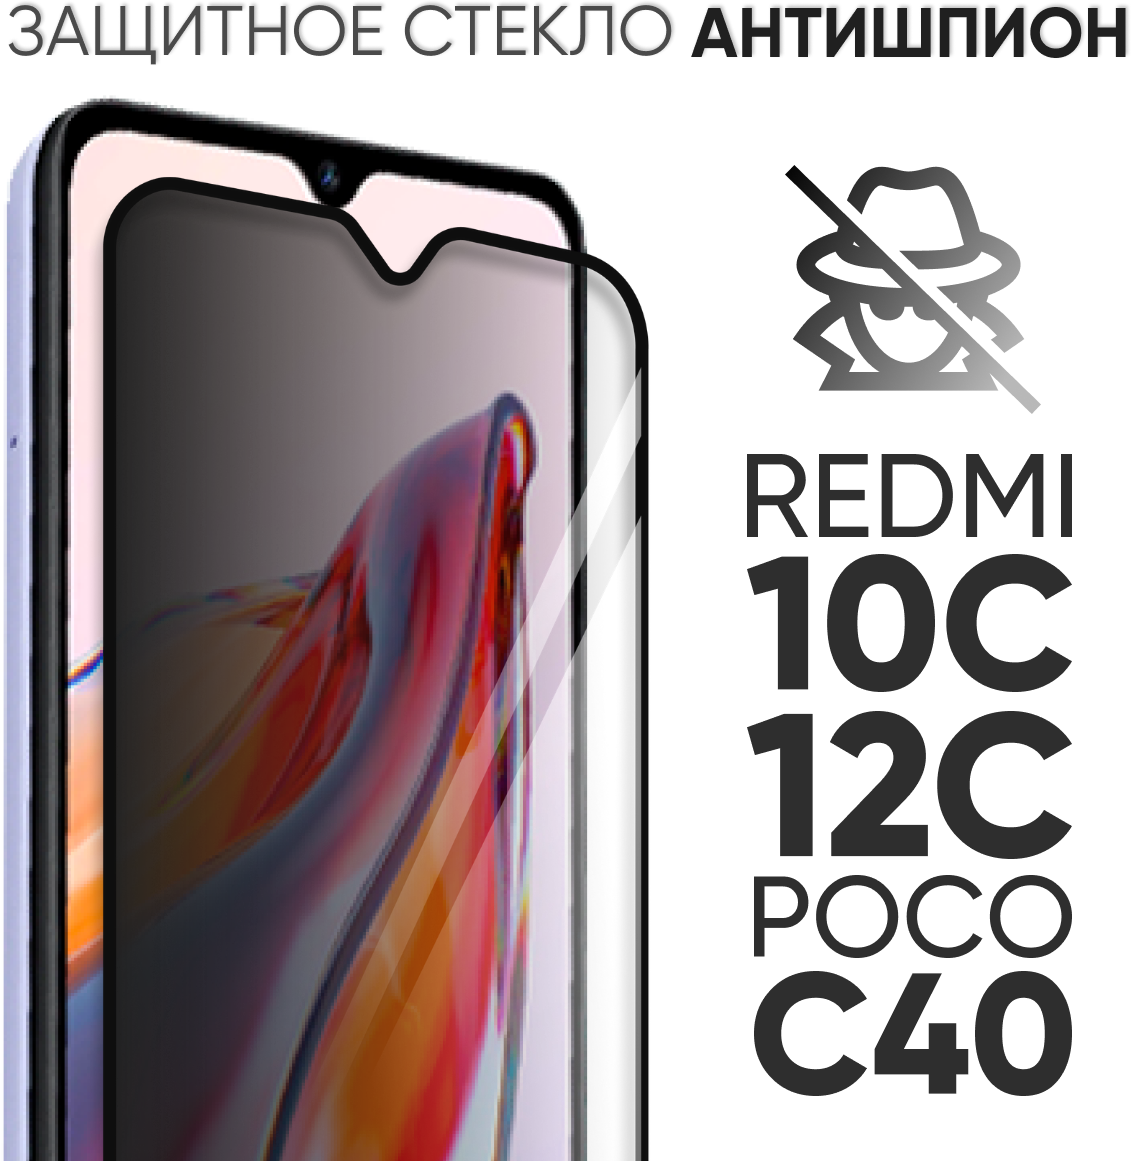 Стекло антишпион полноэкранное для Xiaomi Redmi 10C / 12C / Poco C40 (Ксиоми Сяоми Редми 10Ц, 12Ц, Поко Ц40)